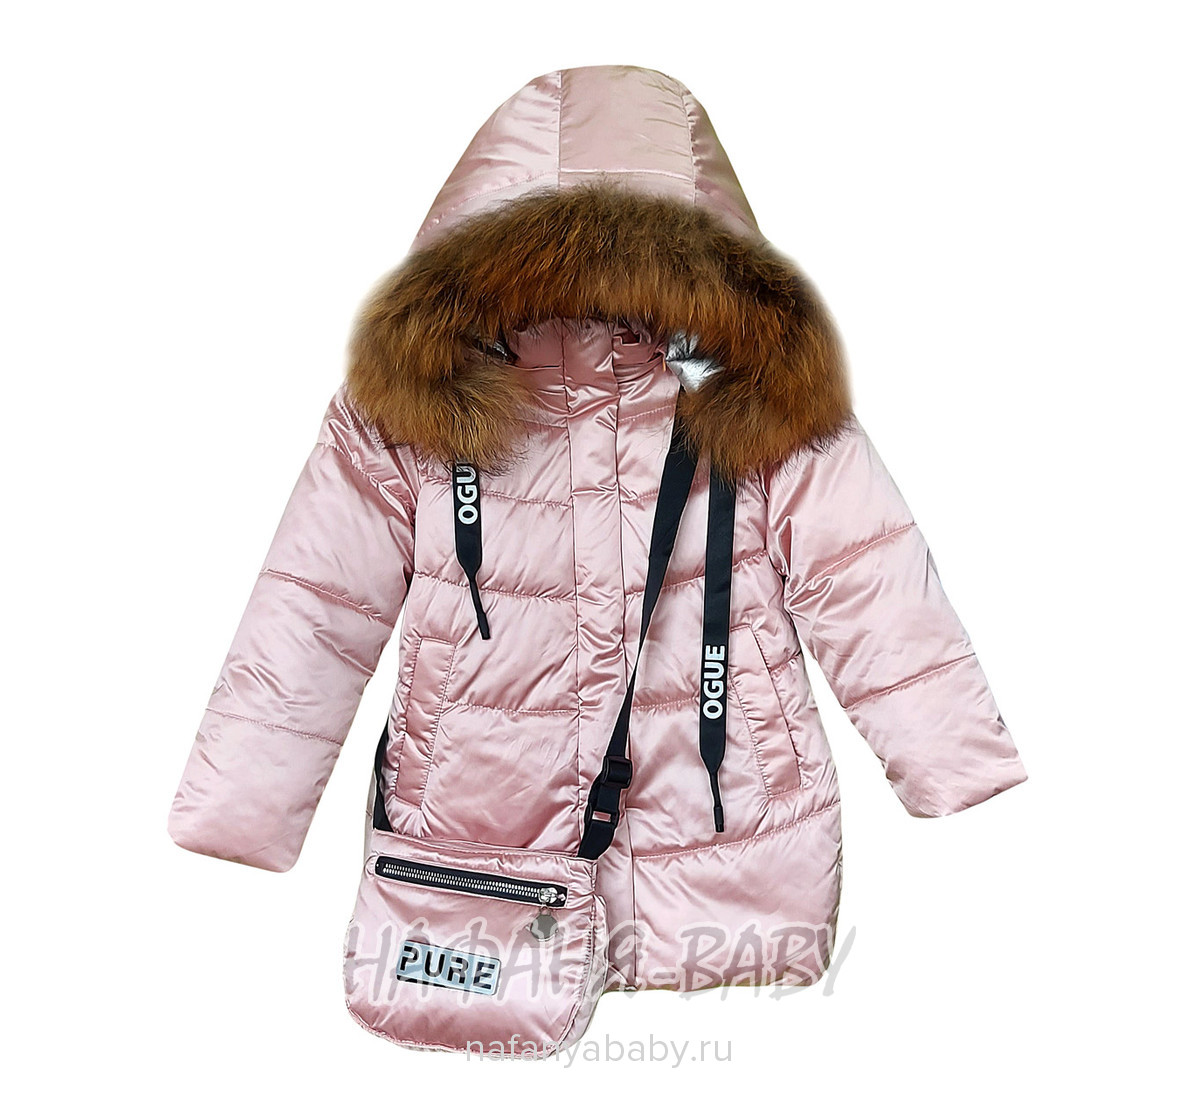 Зимняя удлиненная куртка DELFIN-FREE, купить в интернет магазине Нафаня. арт: 2207.